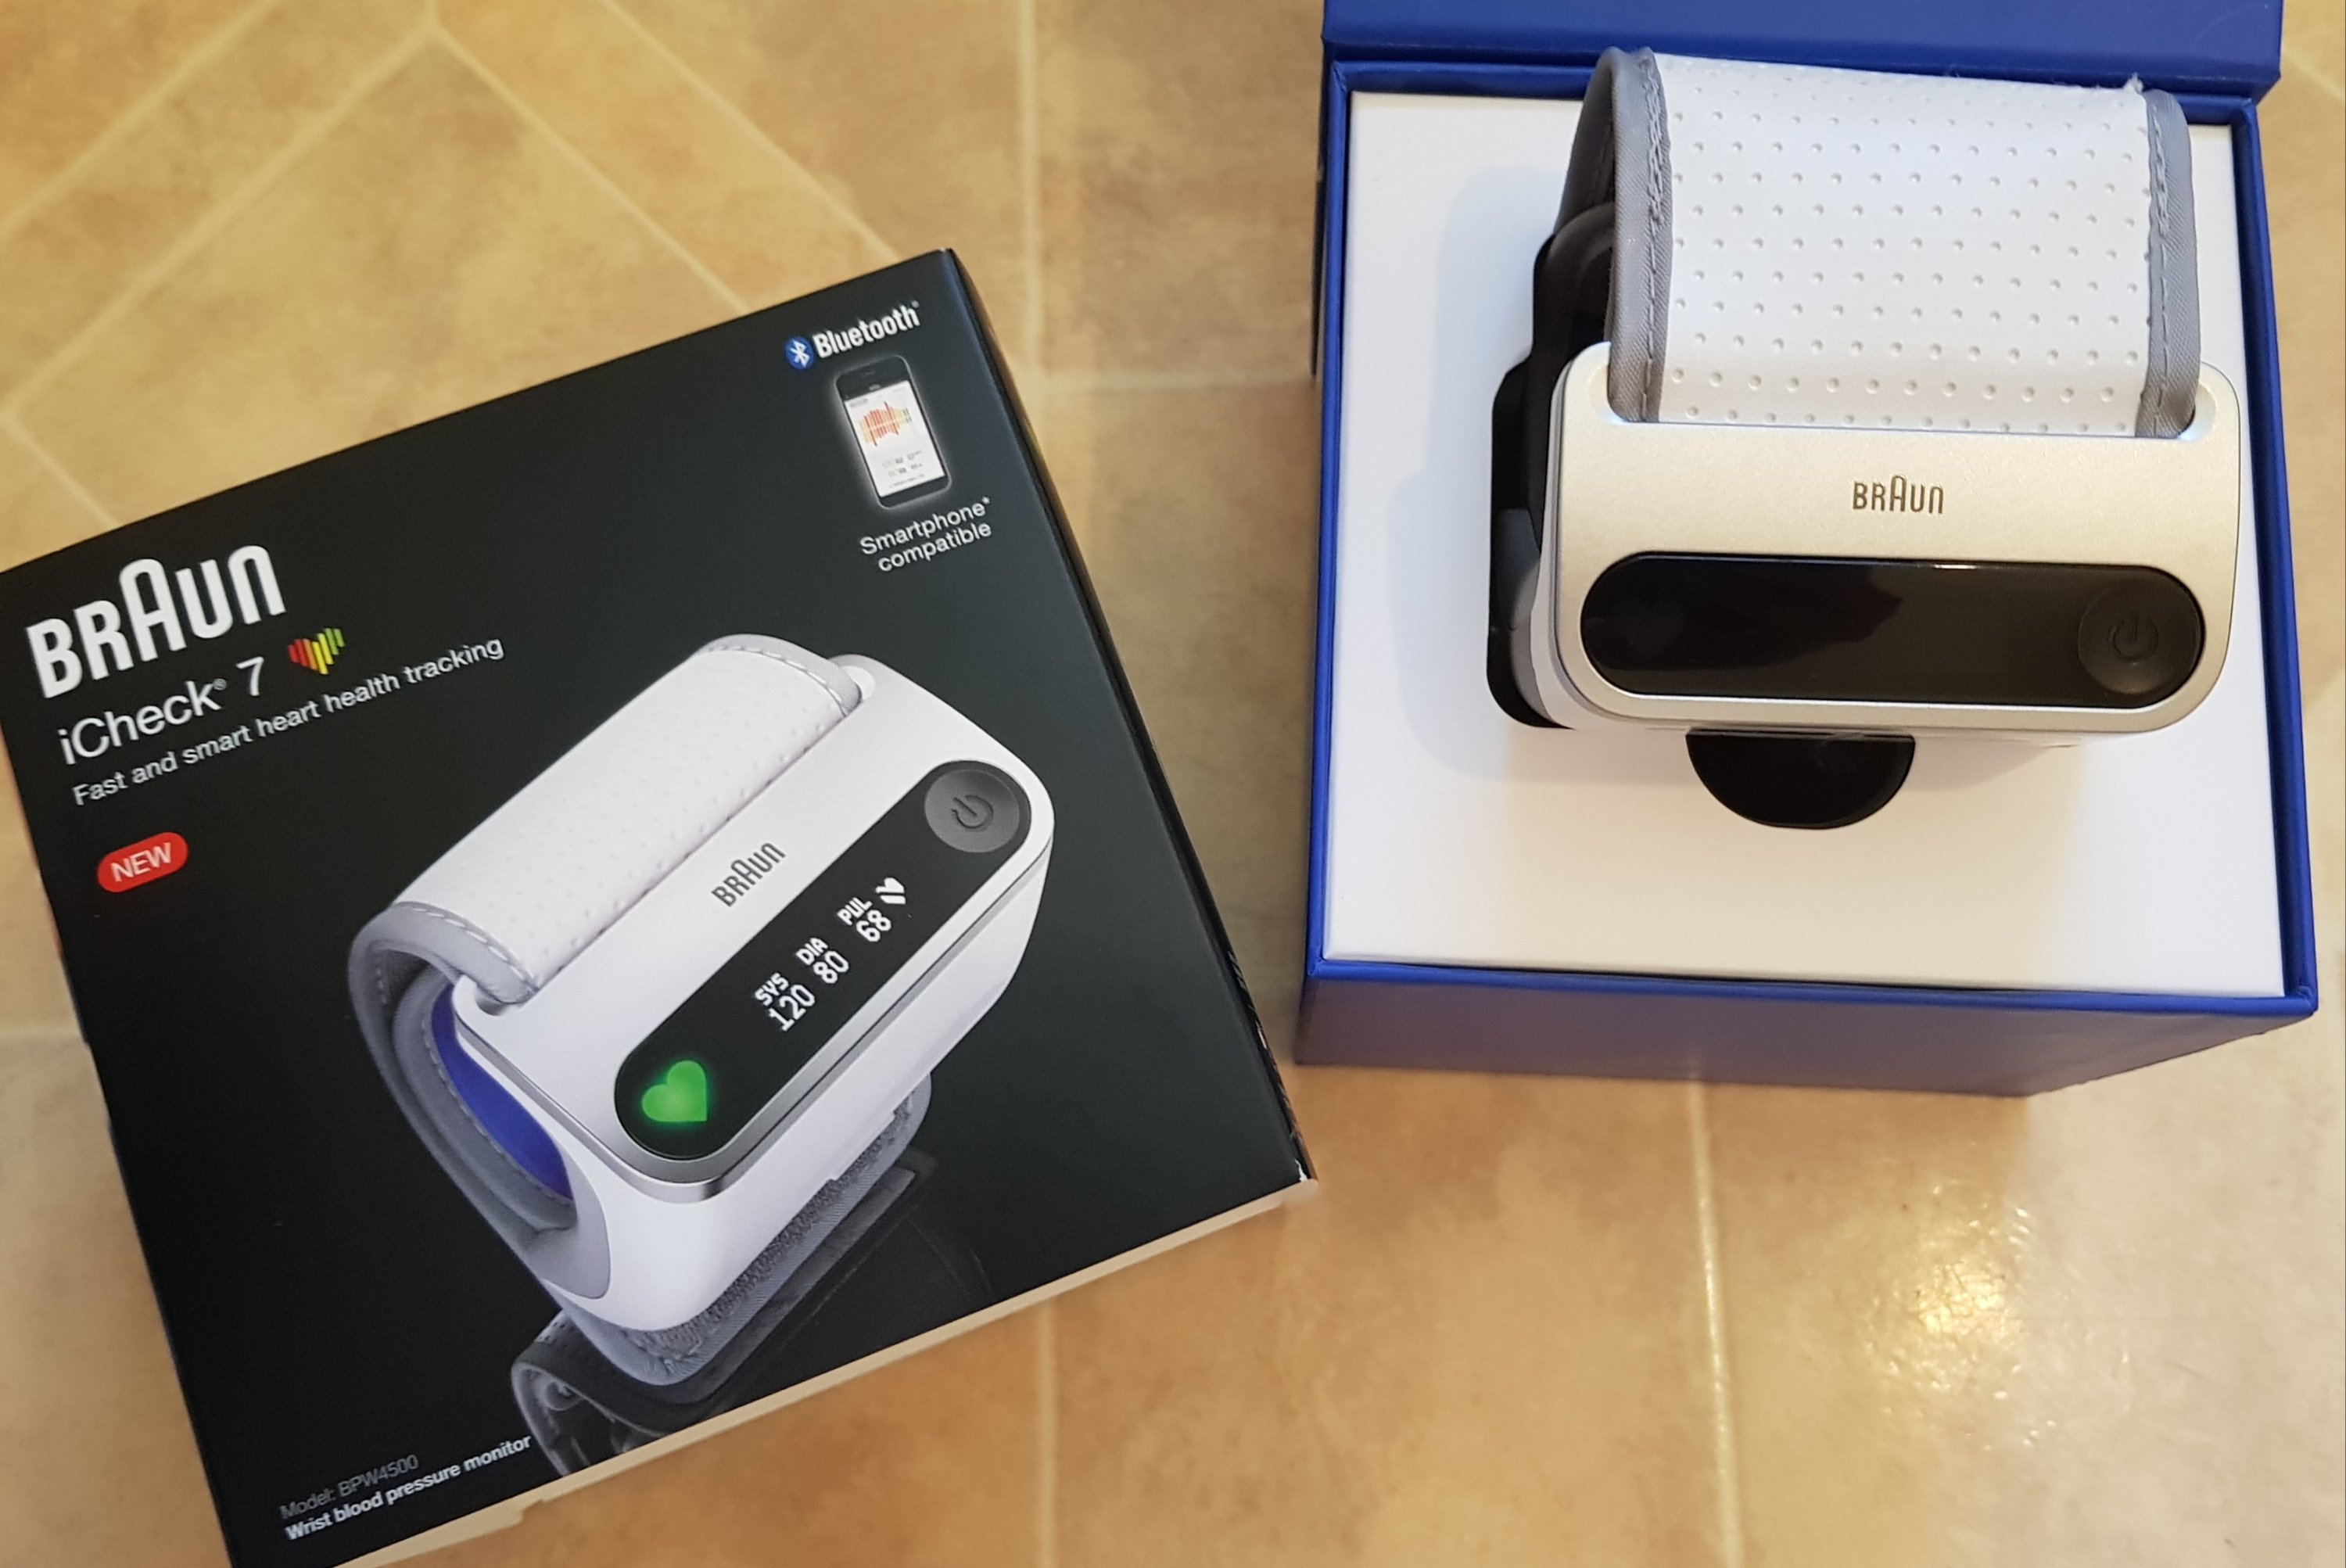 Braun iCheck 7 Wrist Blood Pressure Monitor boxed